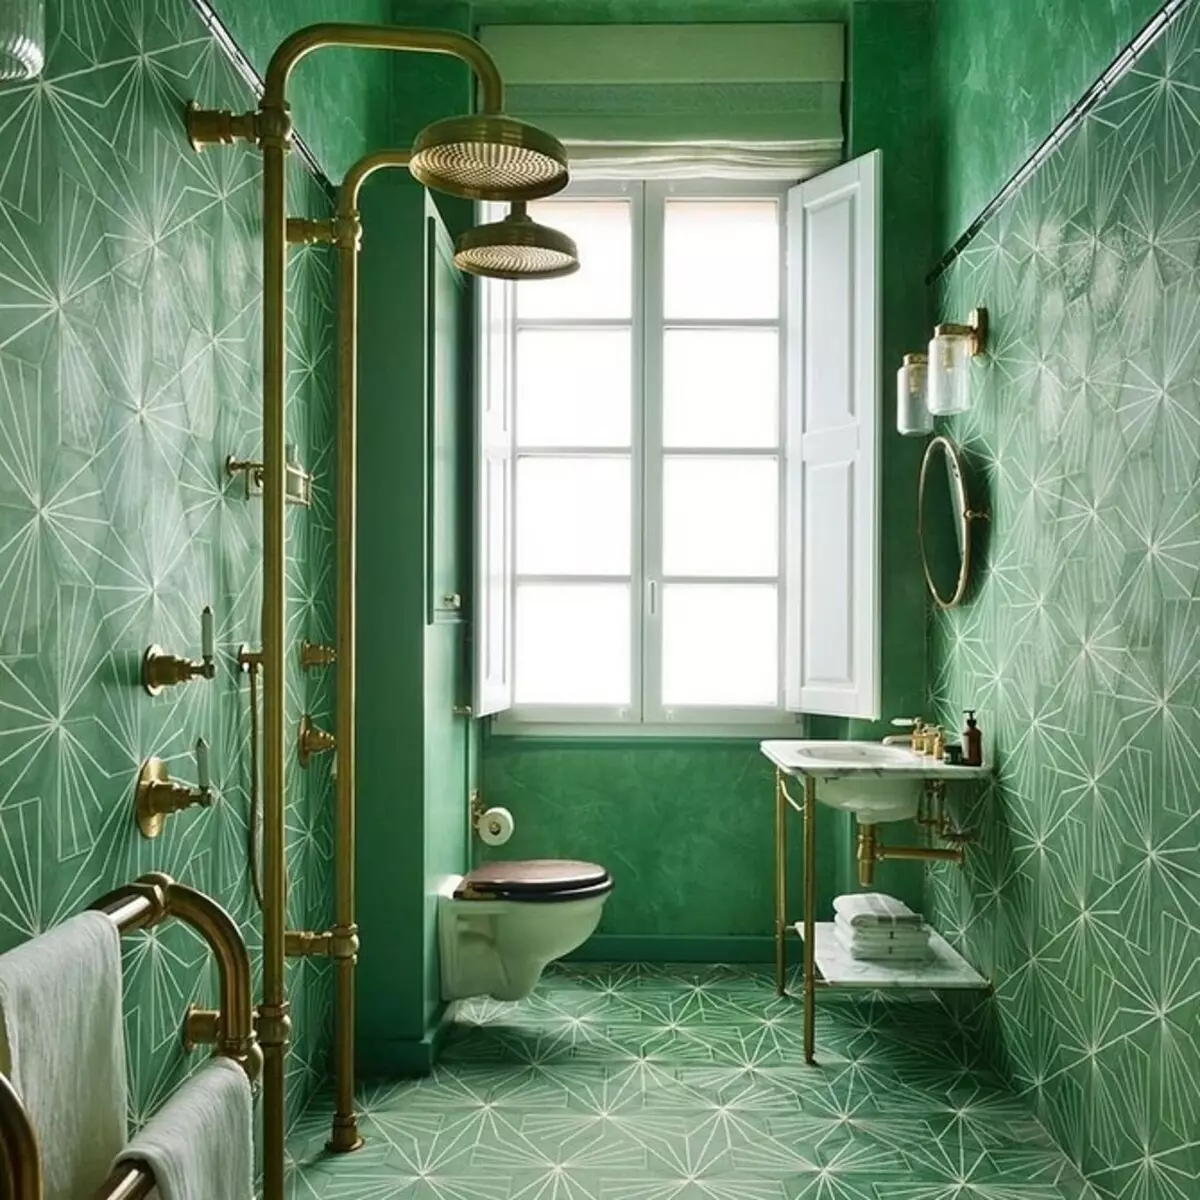 Yeşil Banyo Tasarımı: Profesyoneller gibi renk kullanın 2889_116